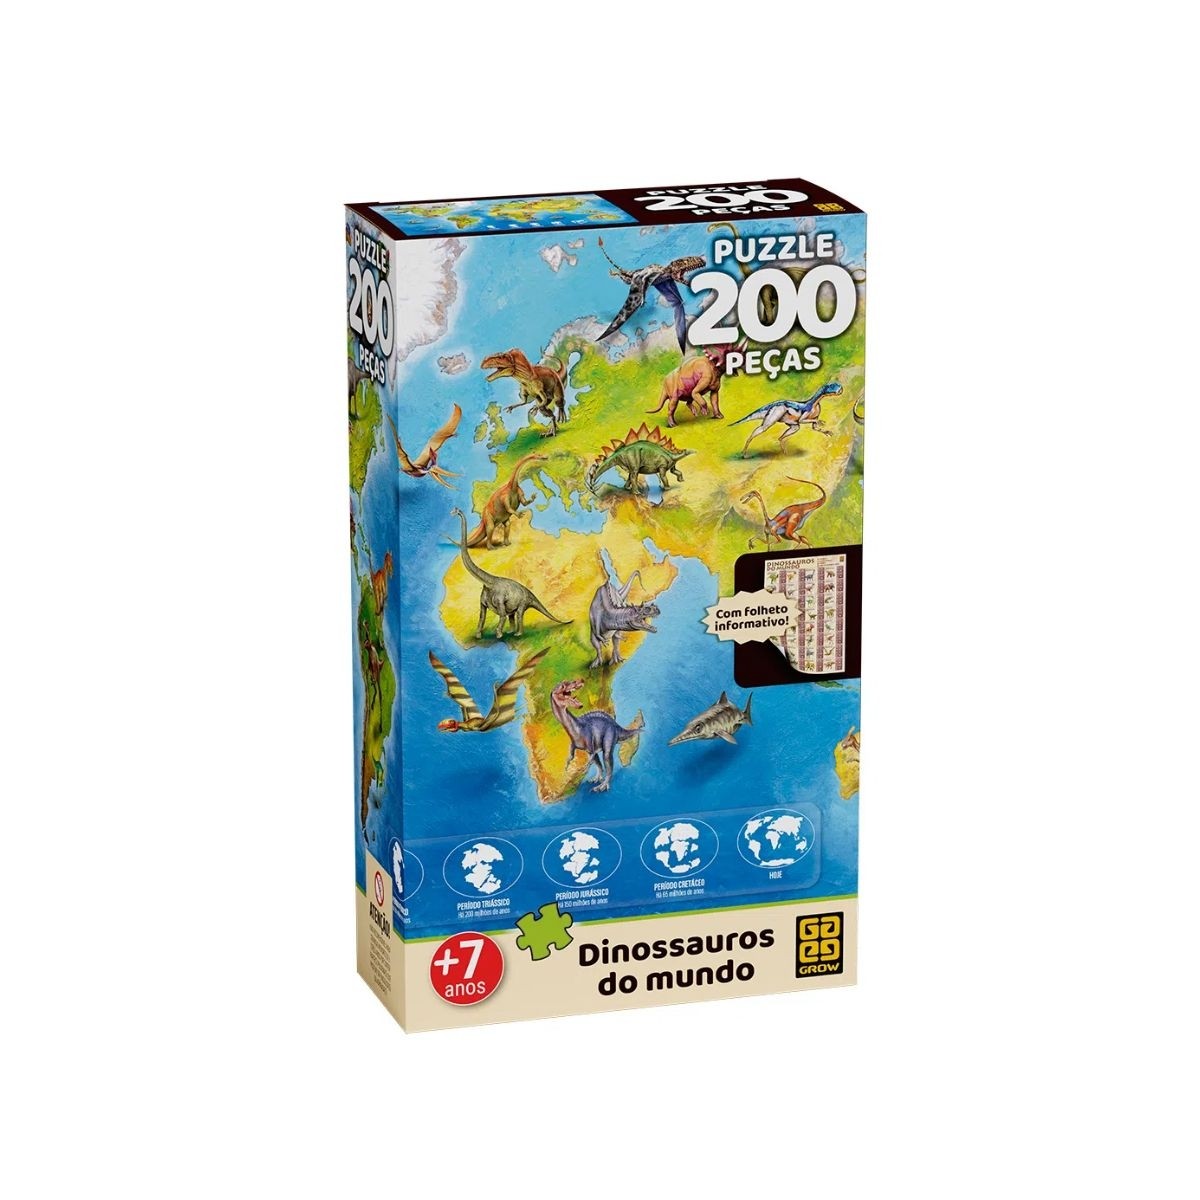 Puzzle 200 peças Dinossauros do Mundo - Grow